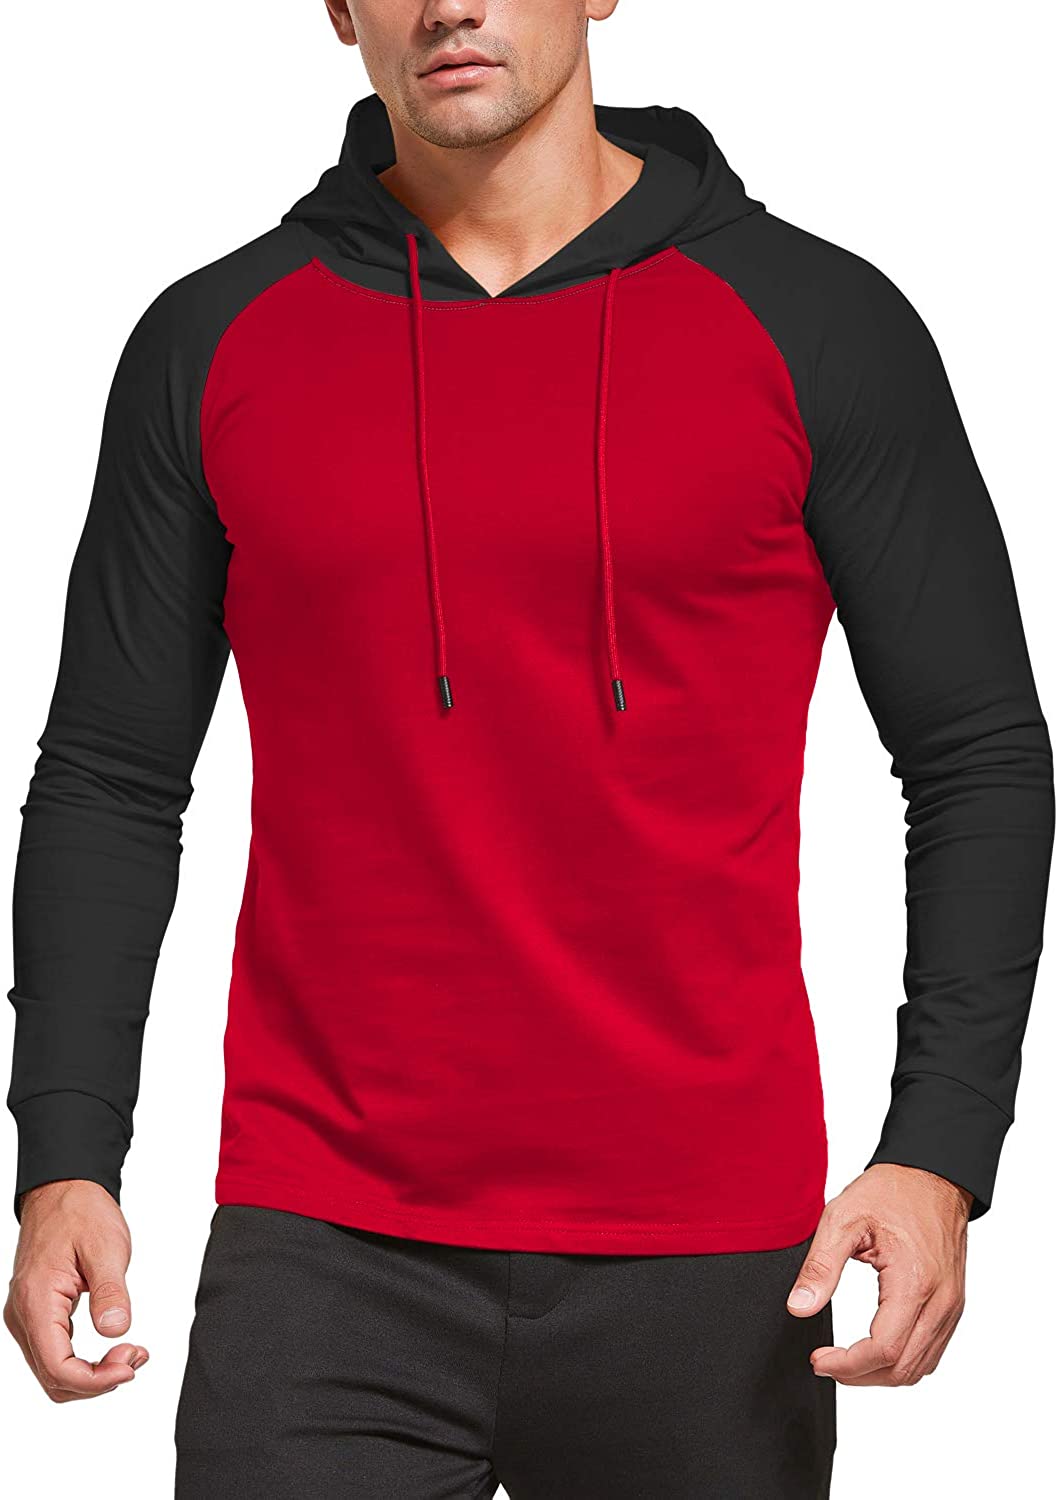 KUYIGO Mens Sweatshirt Long Sleeve Casual Hoody Sports Sweatshirts Hoodies 